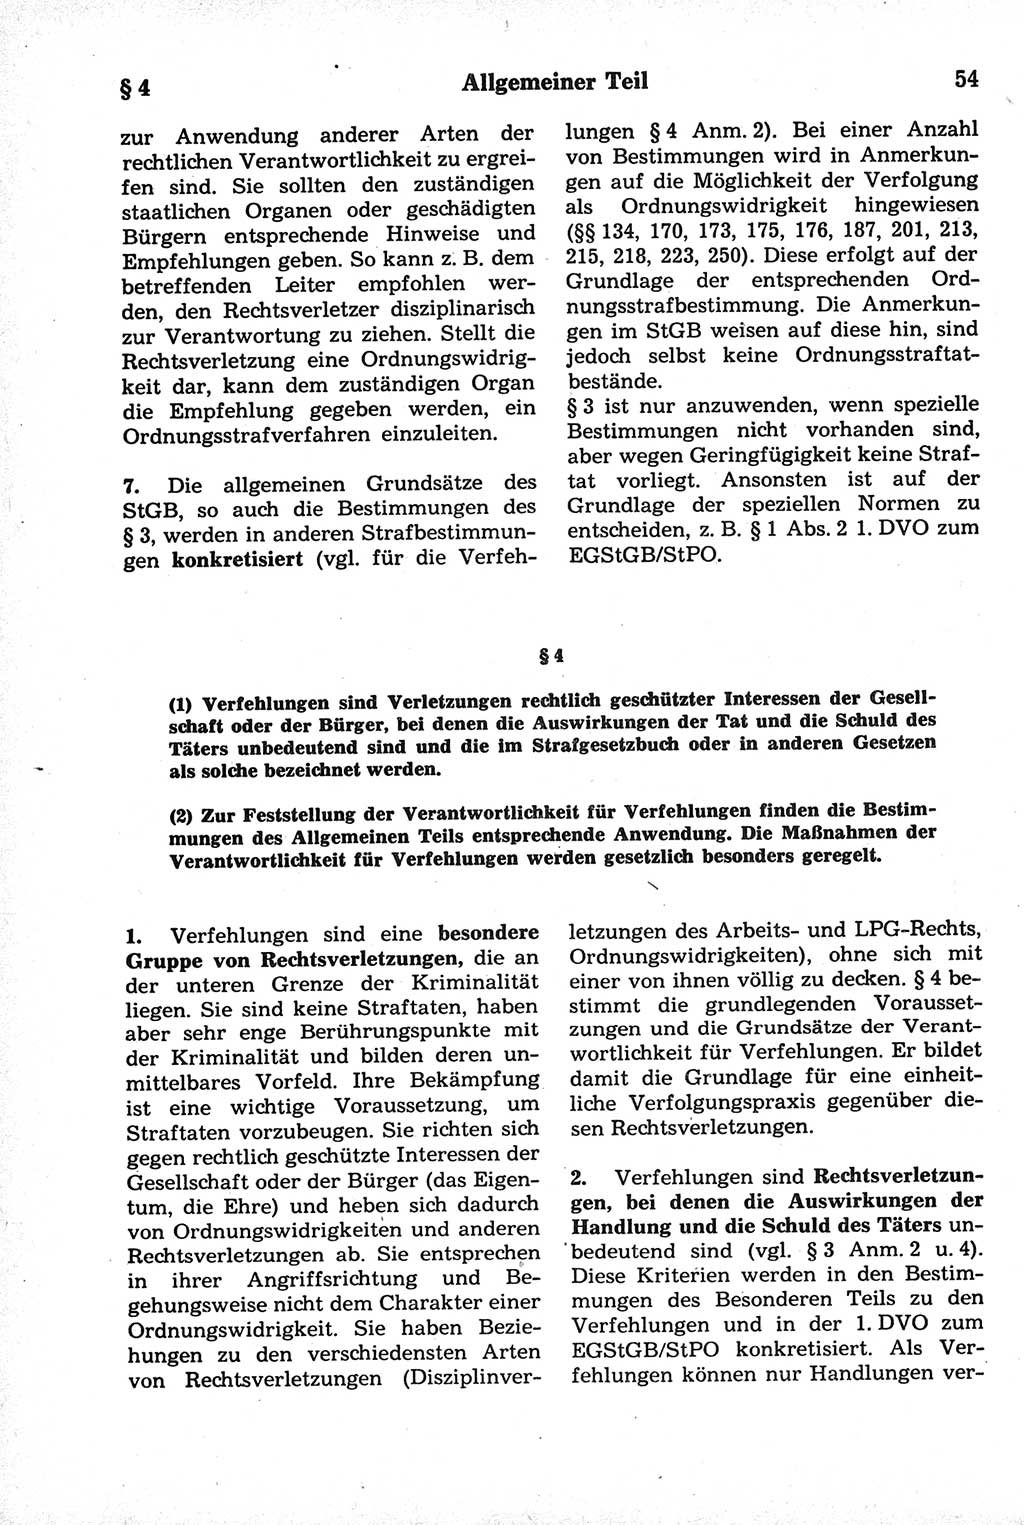 Strafrecht der Deutschen Demokratischen Republik (DDR), Kommentar zum Strafgesetzbuch (StGB) 1981, Seite 54 (Strafr. DDR Komm. StGB 1981, S. 54)